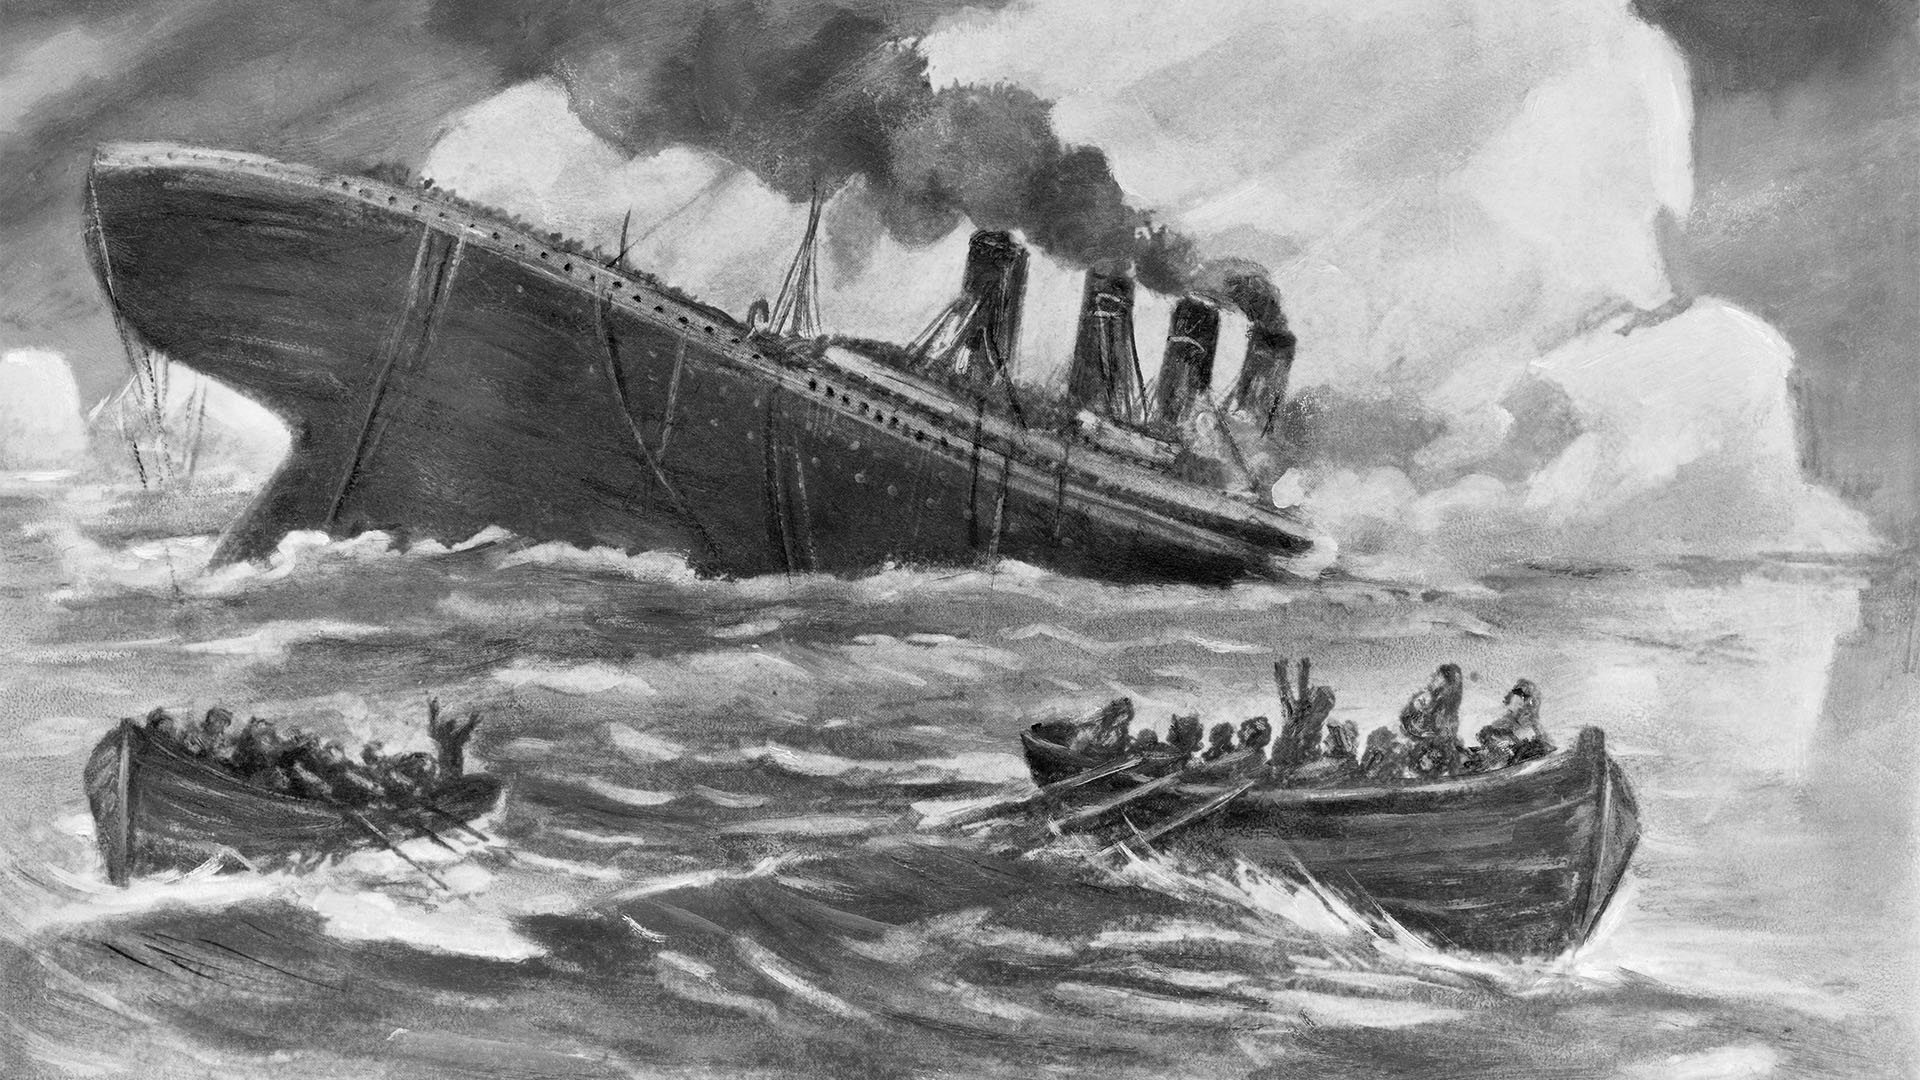 El Titanic, algunas historias inspiradas en la tragedia 110 años después de su hundimiento